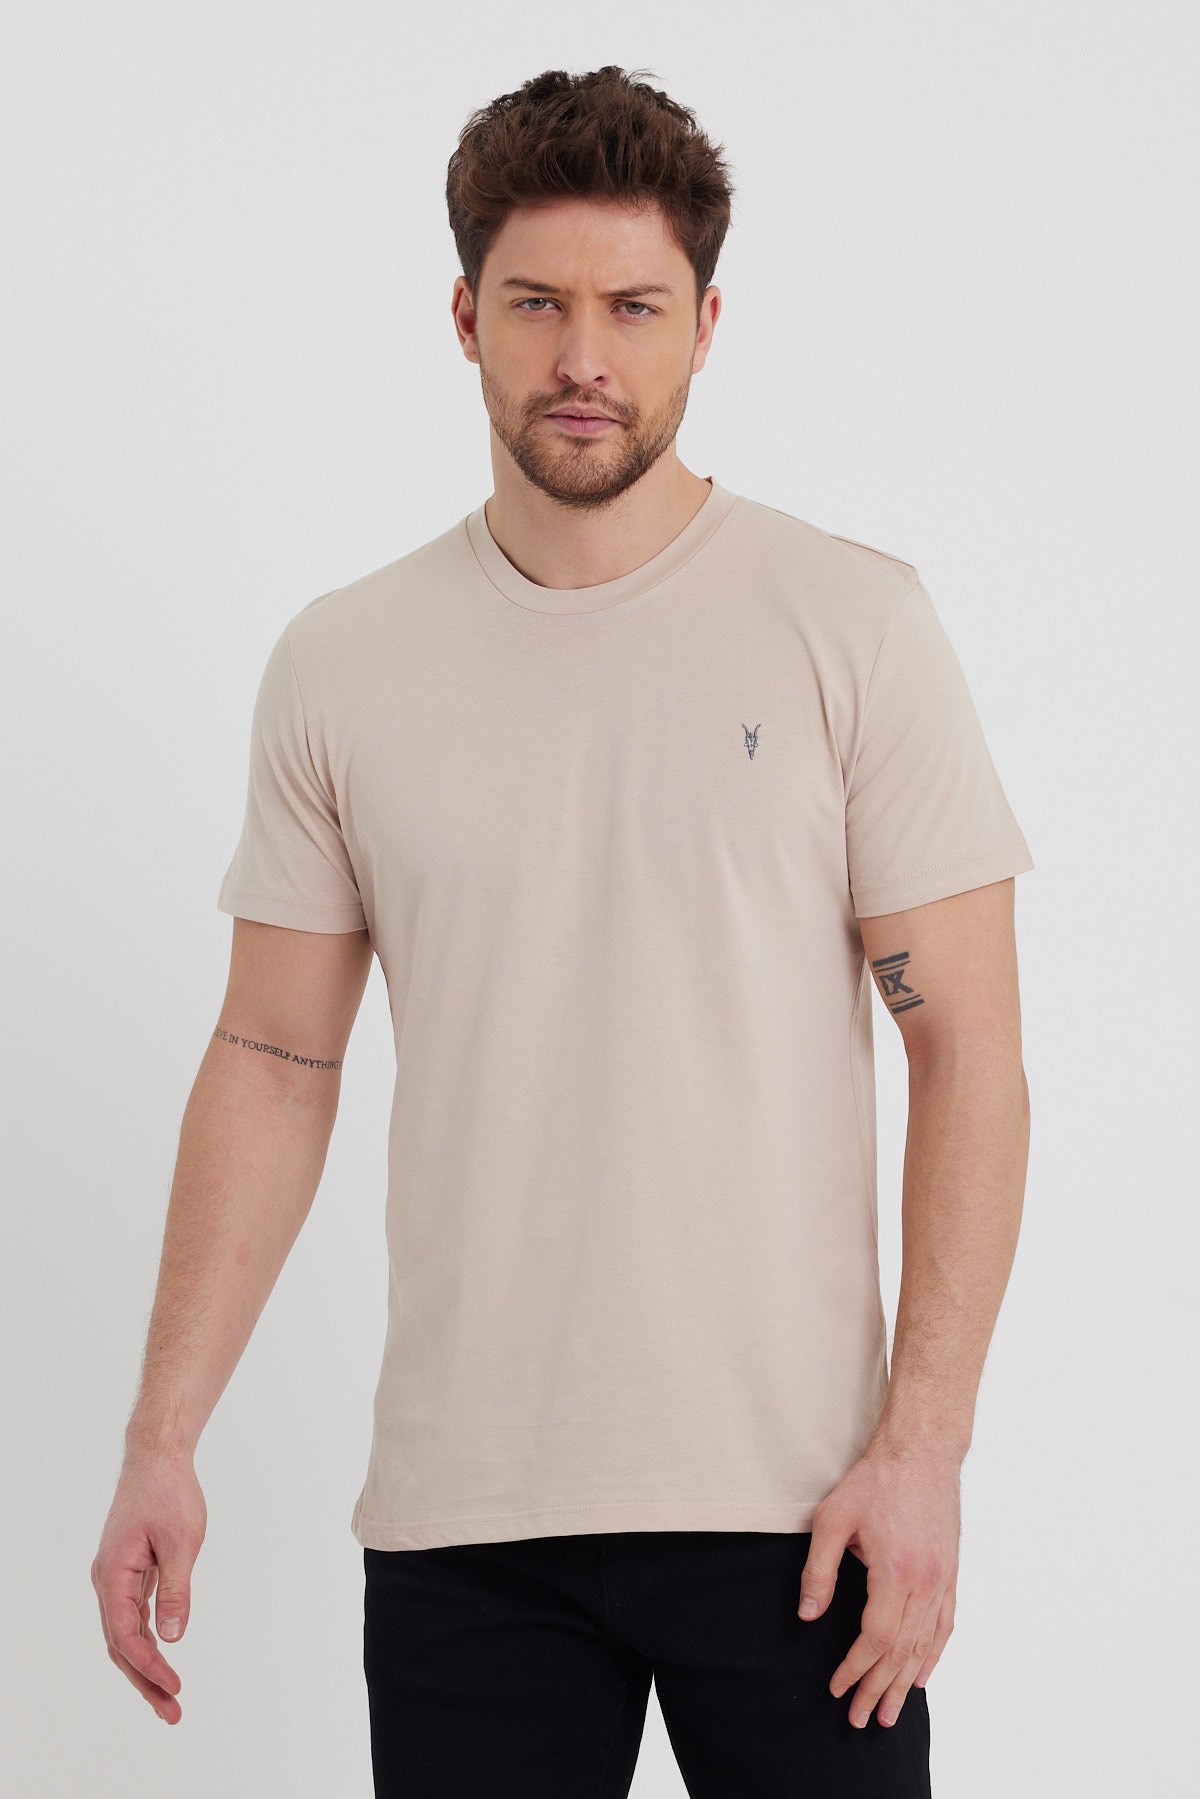 Erkek Bej Rengi T-Shirt Modelleri ve Fiyatları